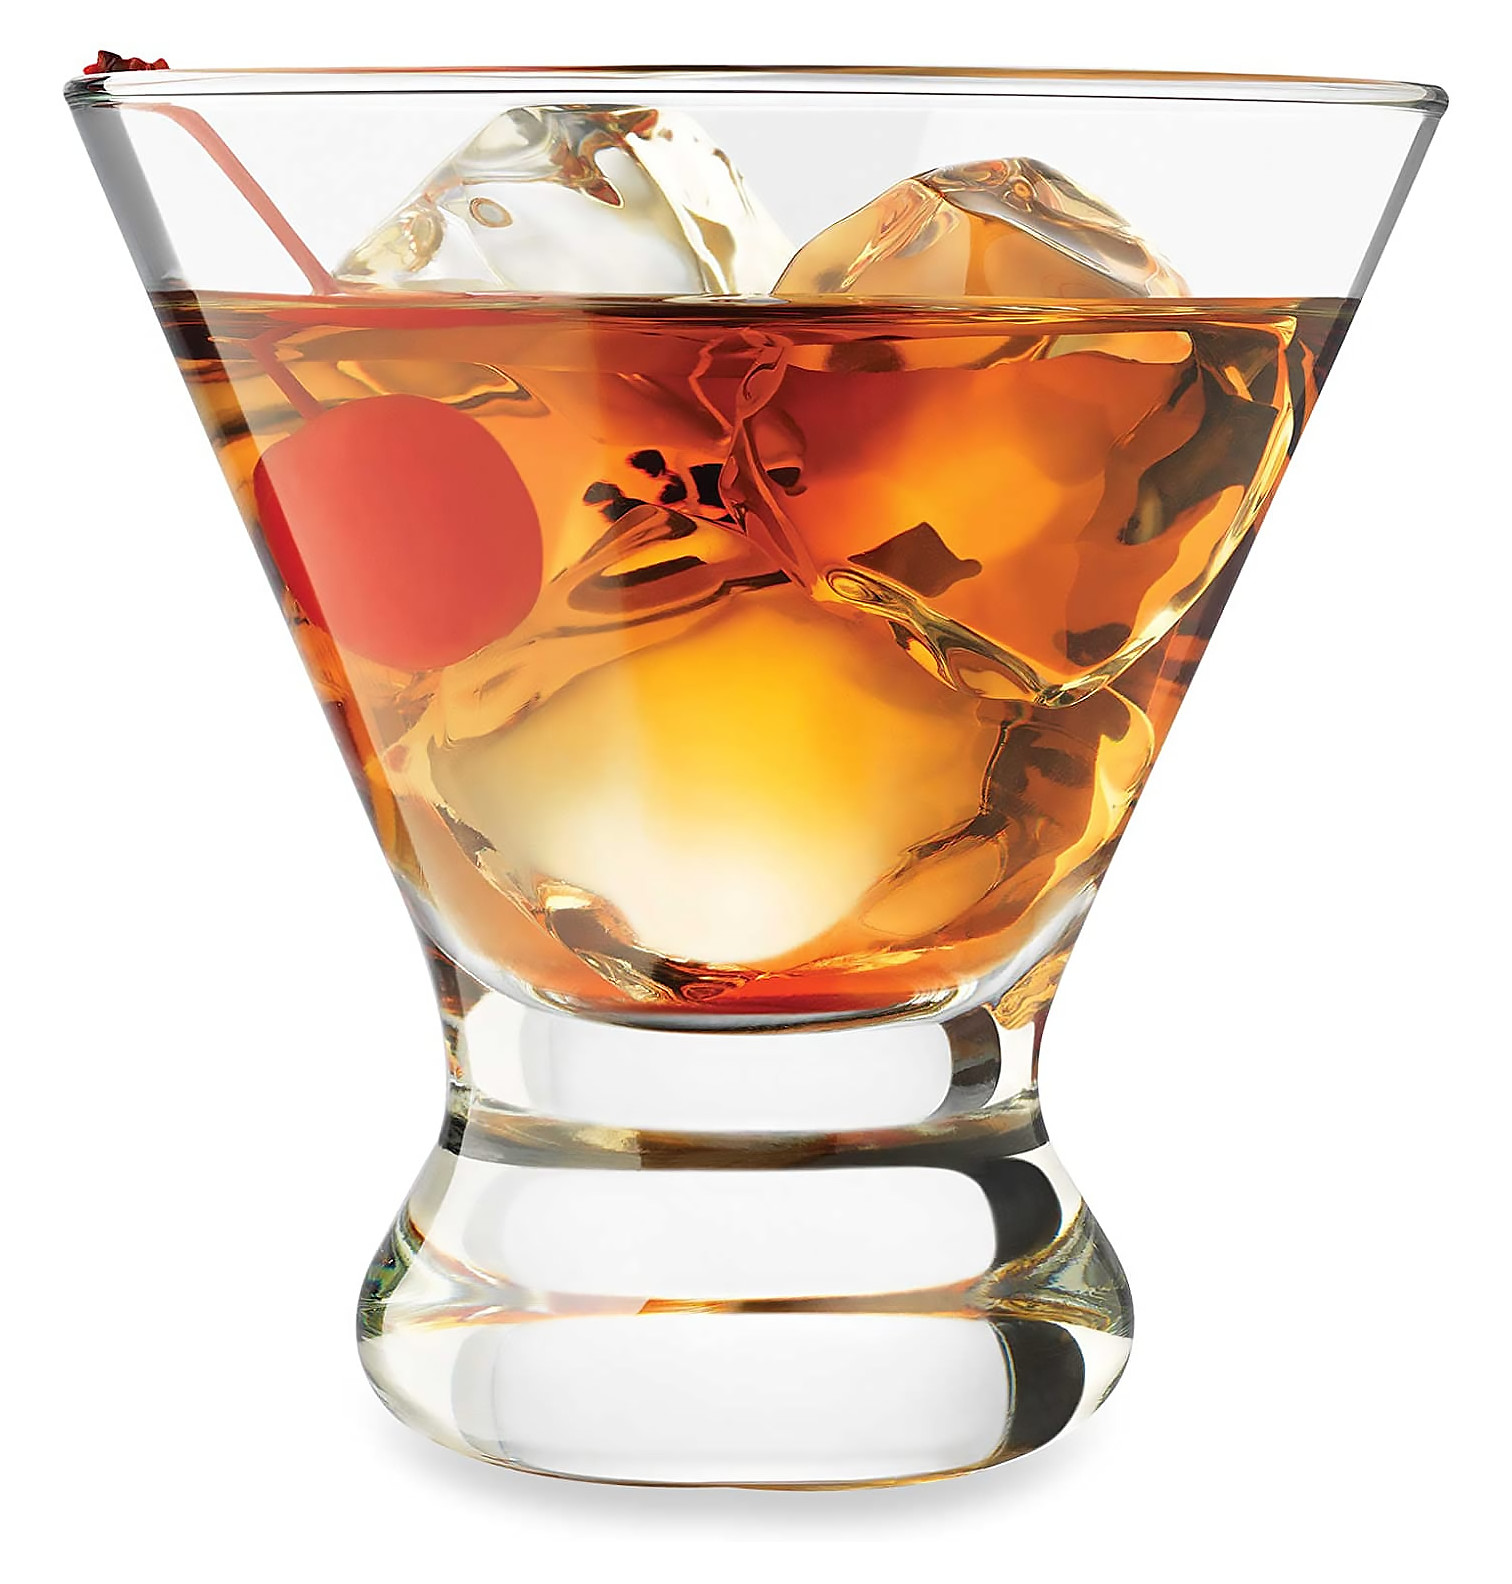 https://www.hansonellis.com/mm5/graphics/00000001/custom-engraved-cosmopolitan-cocktail-glass.jpg